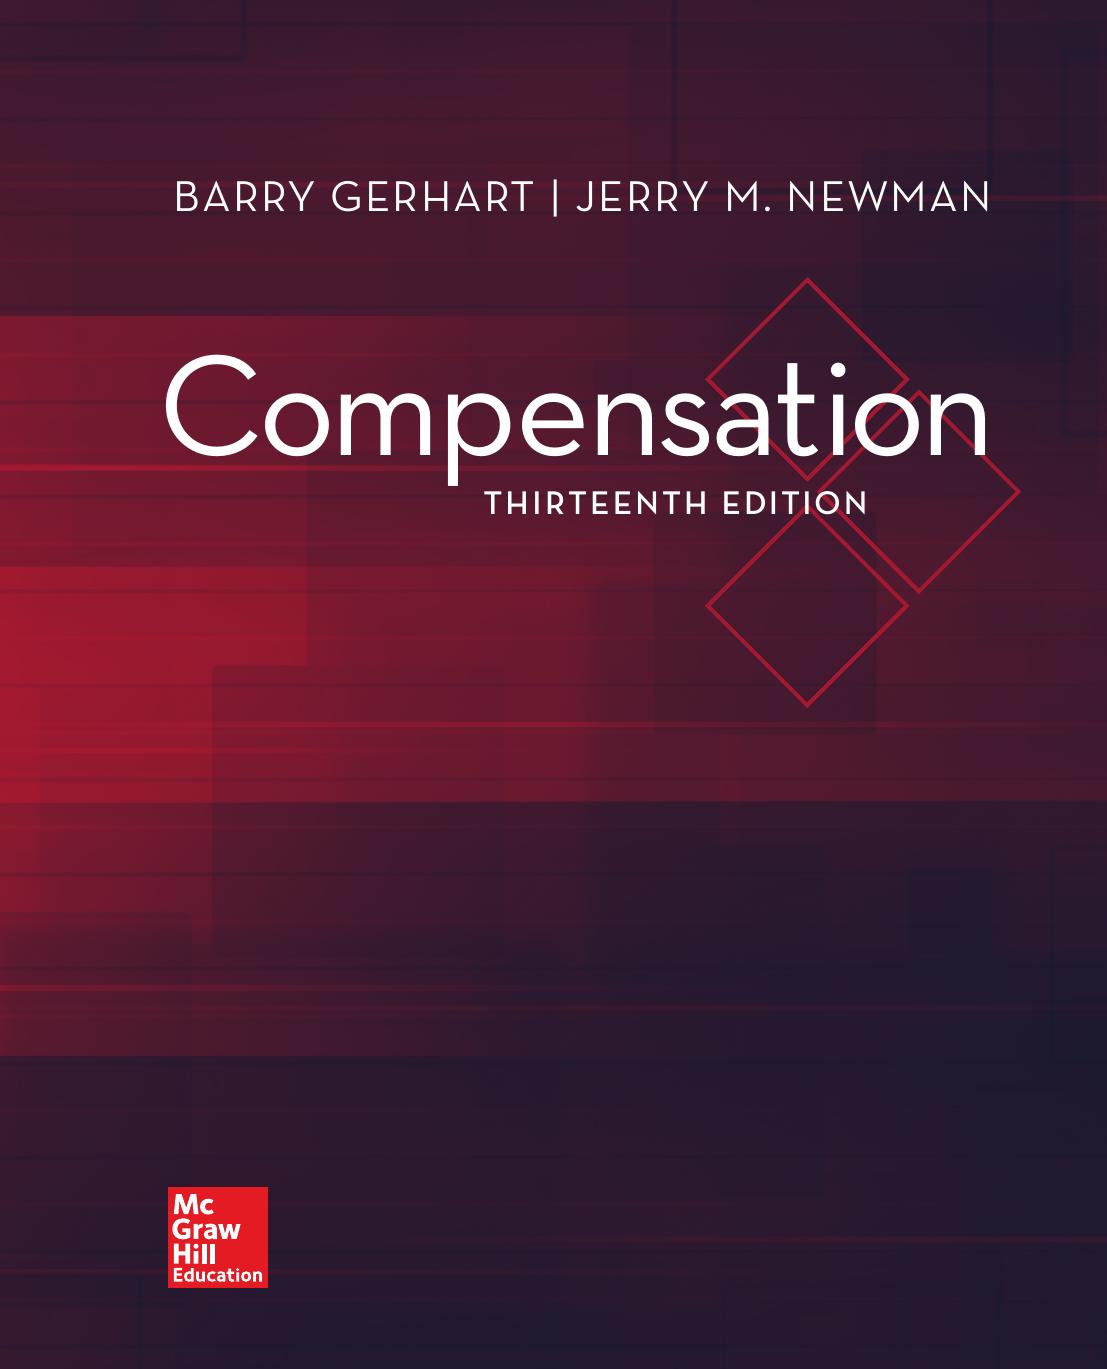 COMPENSATION, THIRTEENTH EDITION - Barry Gerhart & Jerry M. Newman.jpg